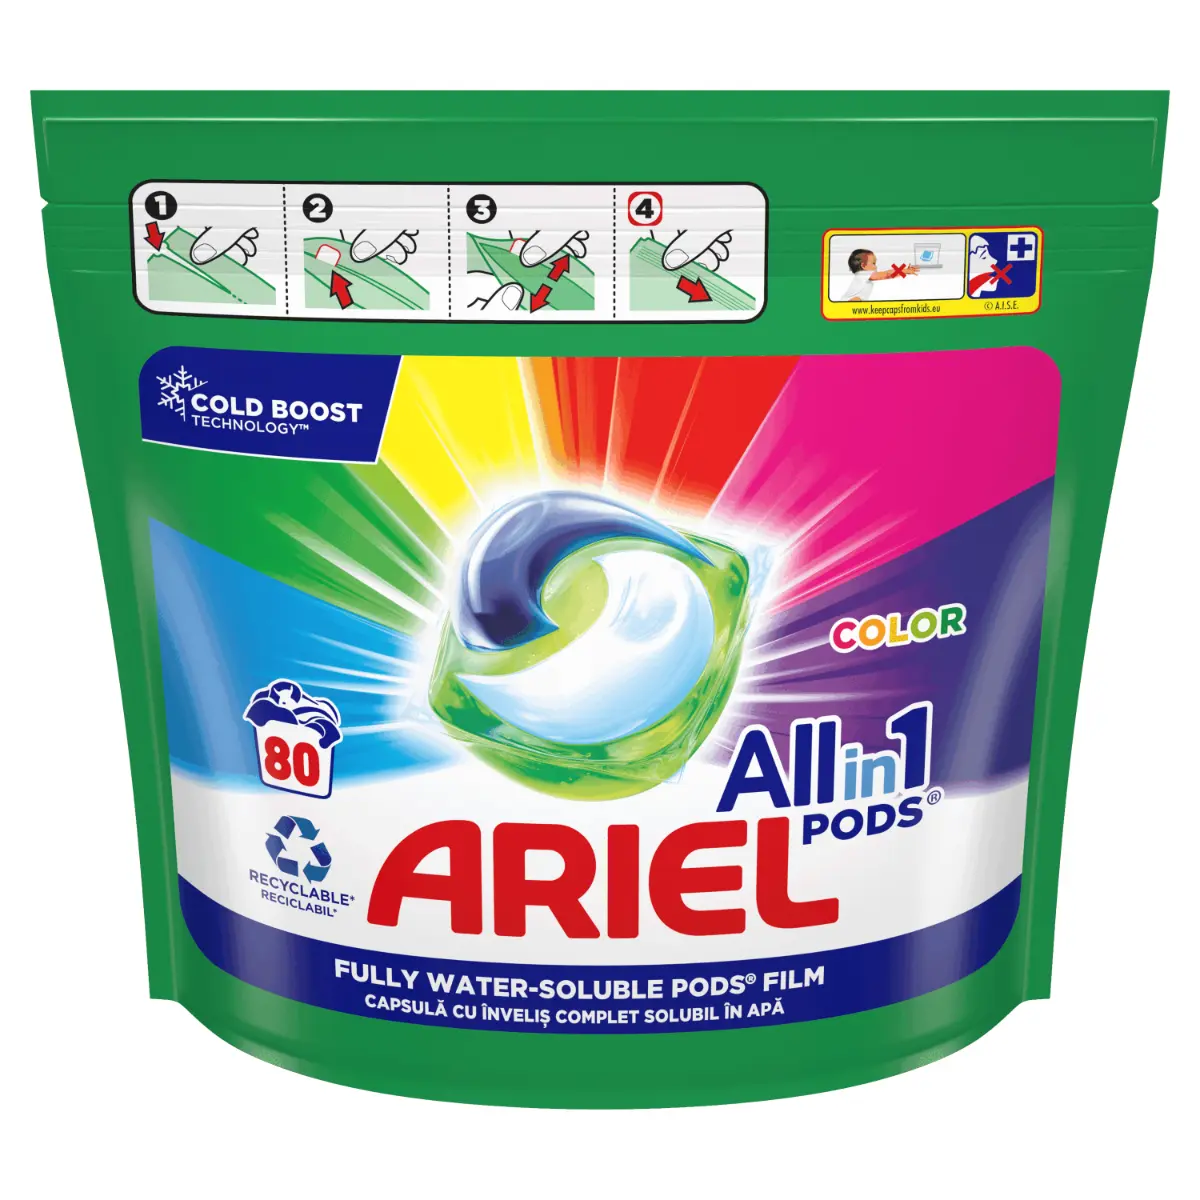 Detergent de rufe capsule Ariel All in One PODS Color, 80 spalari